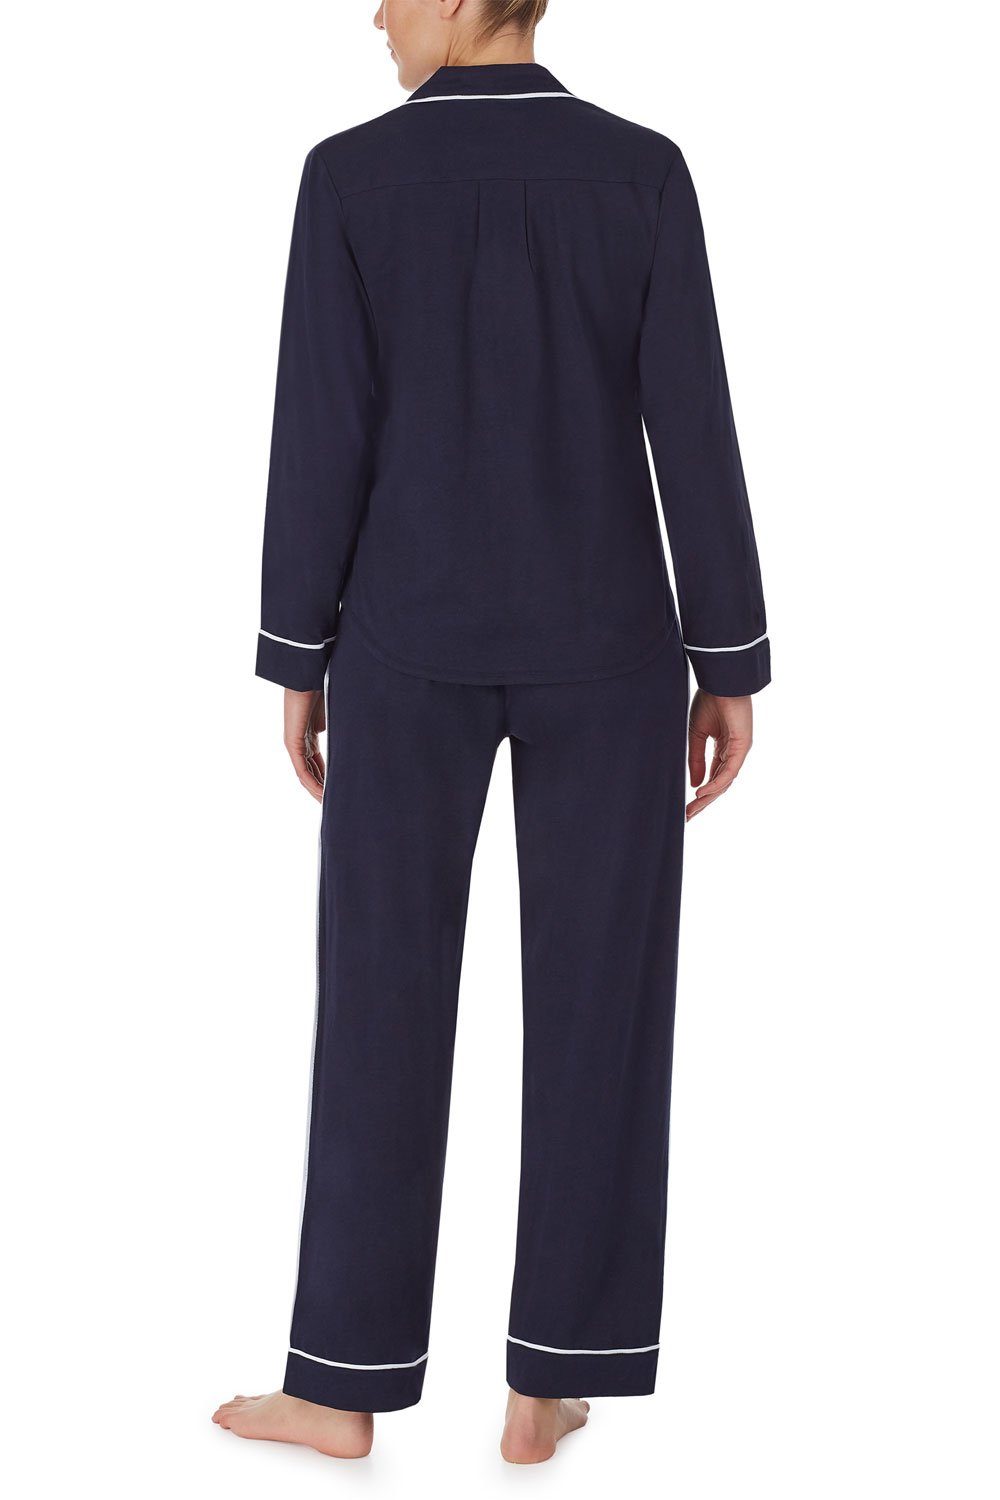 & YI2719259 navy Set DKNY Top Pant Pyjama